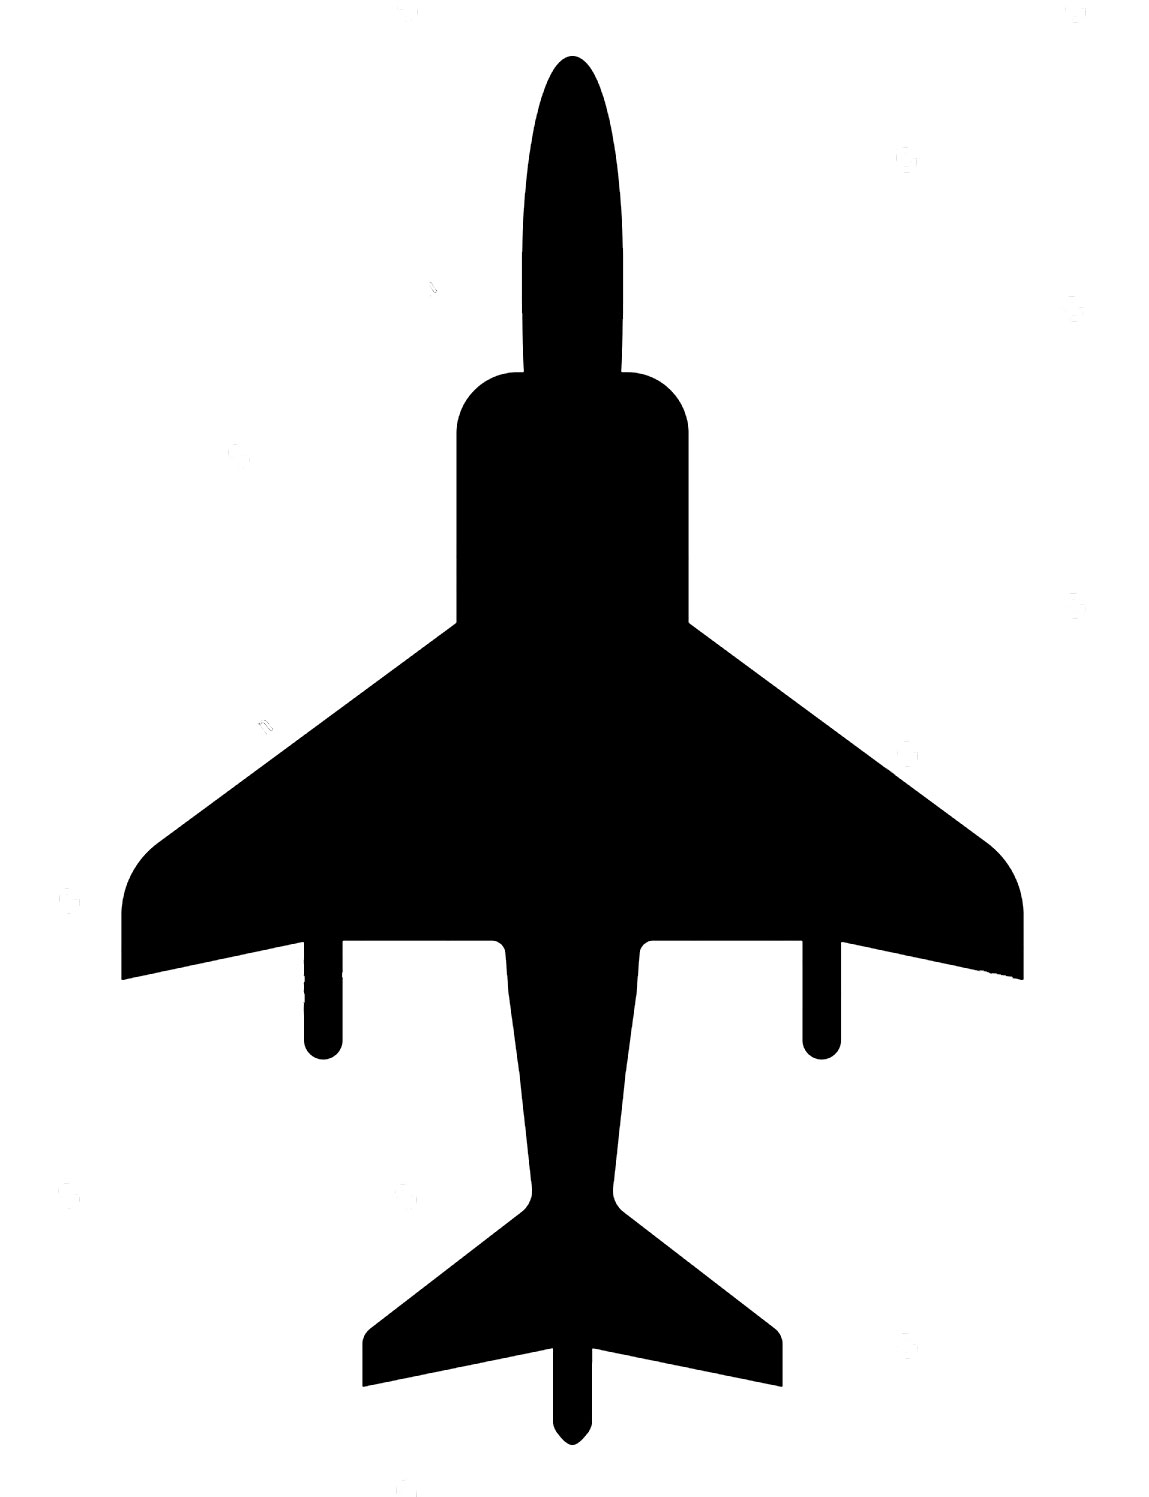 av-8b harrier overhead silhouette